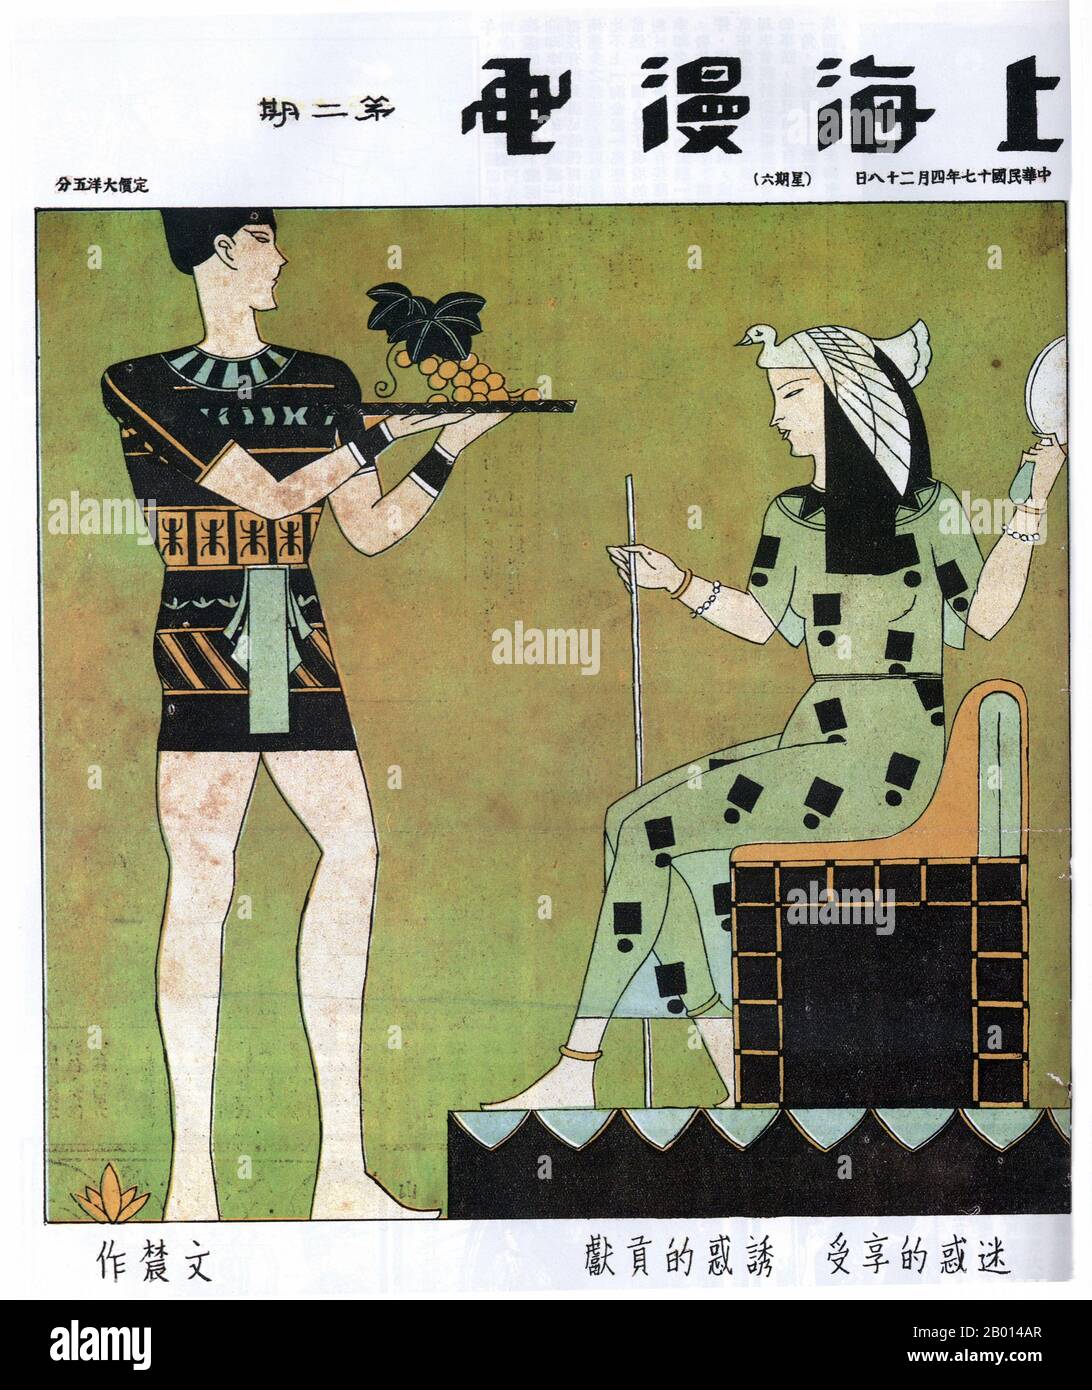 Chine : une image de 'Shanghai Manhua' qui emprunte à l'art de l'Égypte ancienne. Un jeune homme offre un plateau de raisins à une reine stylisée. La légende se traduit par « offrir la tentation, recevoir l'engouement ». Par Huan Wennong, 28 avril 1928. L'image 'Shanghai Manhua' (Shanghai Sketch), publiée entre le 21 avril 1928 et le 7 juin 1930, était un mélange de dessins, de photographies et d'images allant de la publicité à la critique sociale et de caricatures politiques. Shanghai Manhua était un débouché pour les dessinateurs professionnels et les maîtres de croquis, généralement d'une nature avant-gardiste ou progressive. Banque D'Images